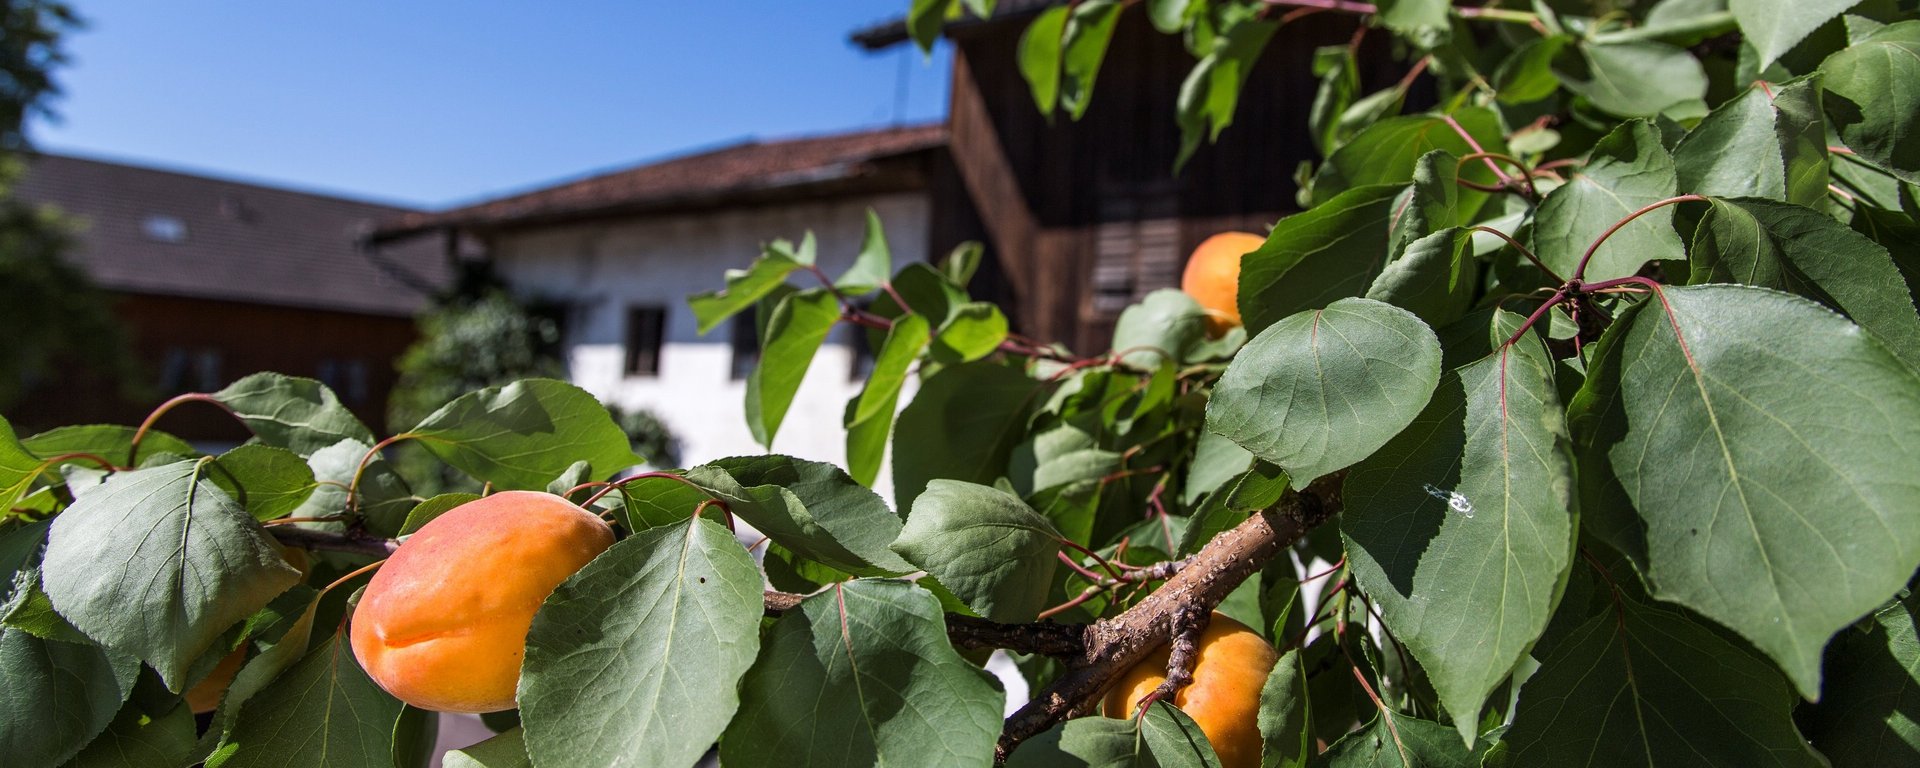 Urlaub auf Bayerns Bauernhöfen, die Obst anbauen und verarbeiten. 